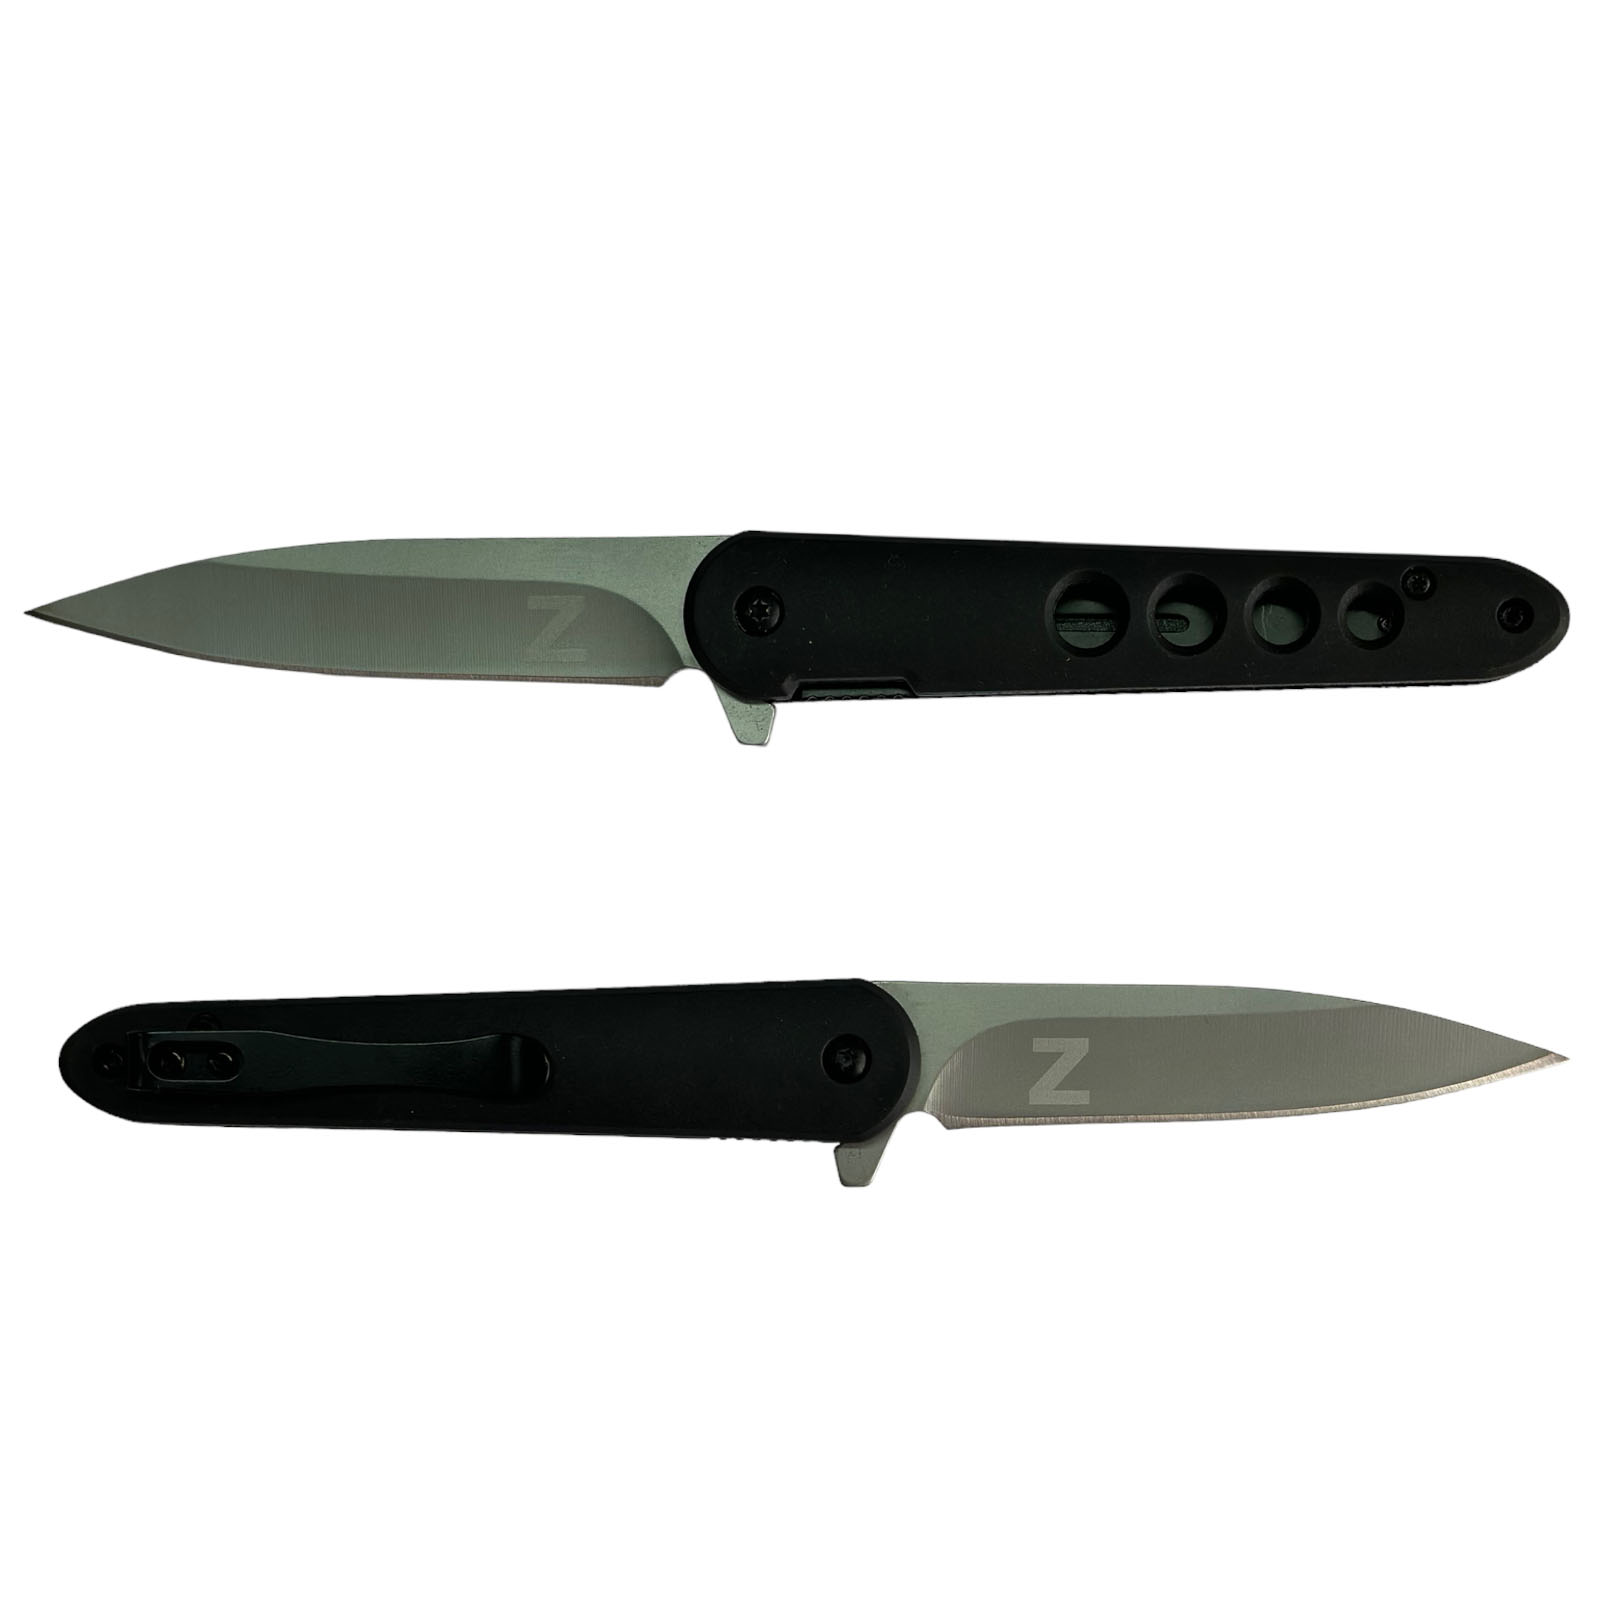 Купить классический складной нож с клипсой и символом Z